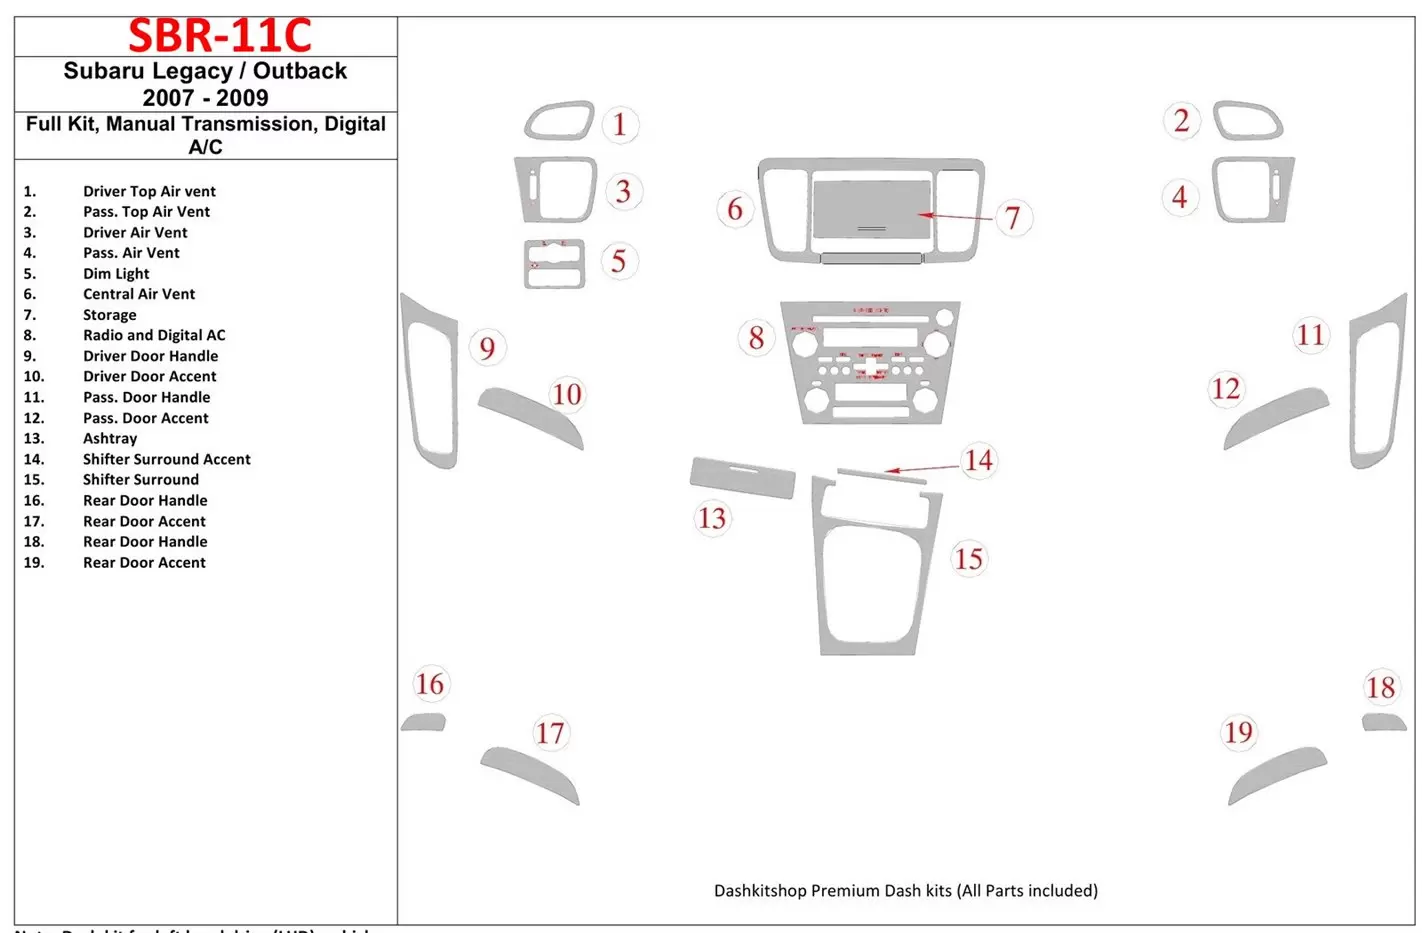 Subaru Legacy 2007-2009 Ensemble Complet, boîte manuelle Box, Automatic AC BD Kit la décoration du tableau de bord - 1 - habilla